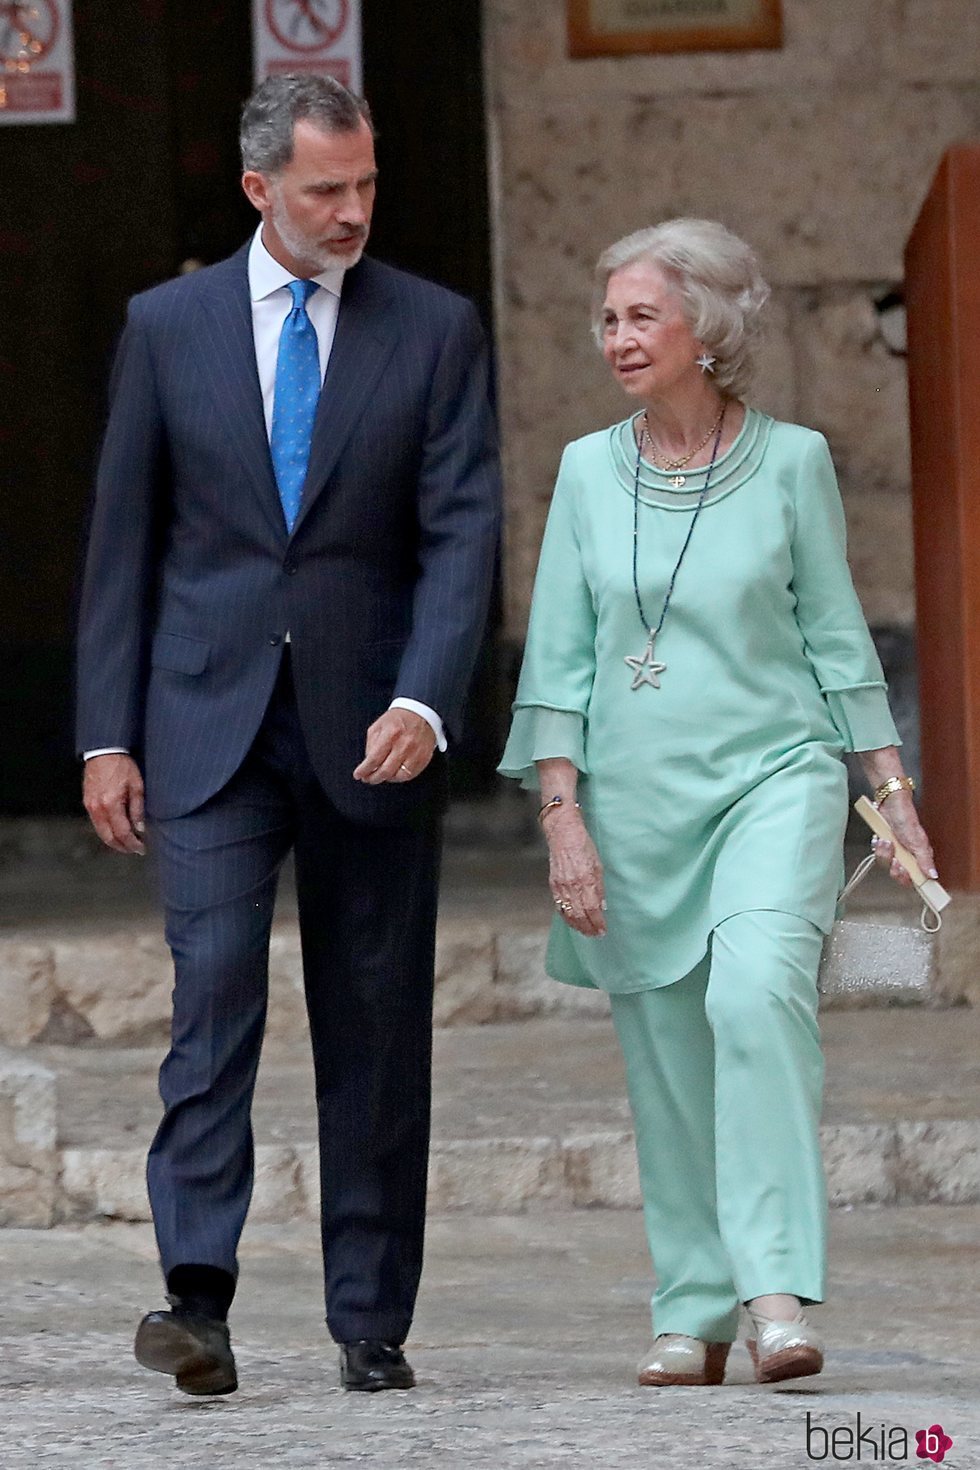 El Rey Felipe con su madre la Reina Sofía en la recepción del Palacio de la Almudaina en Mallorca del verano 2019